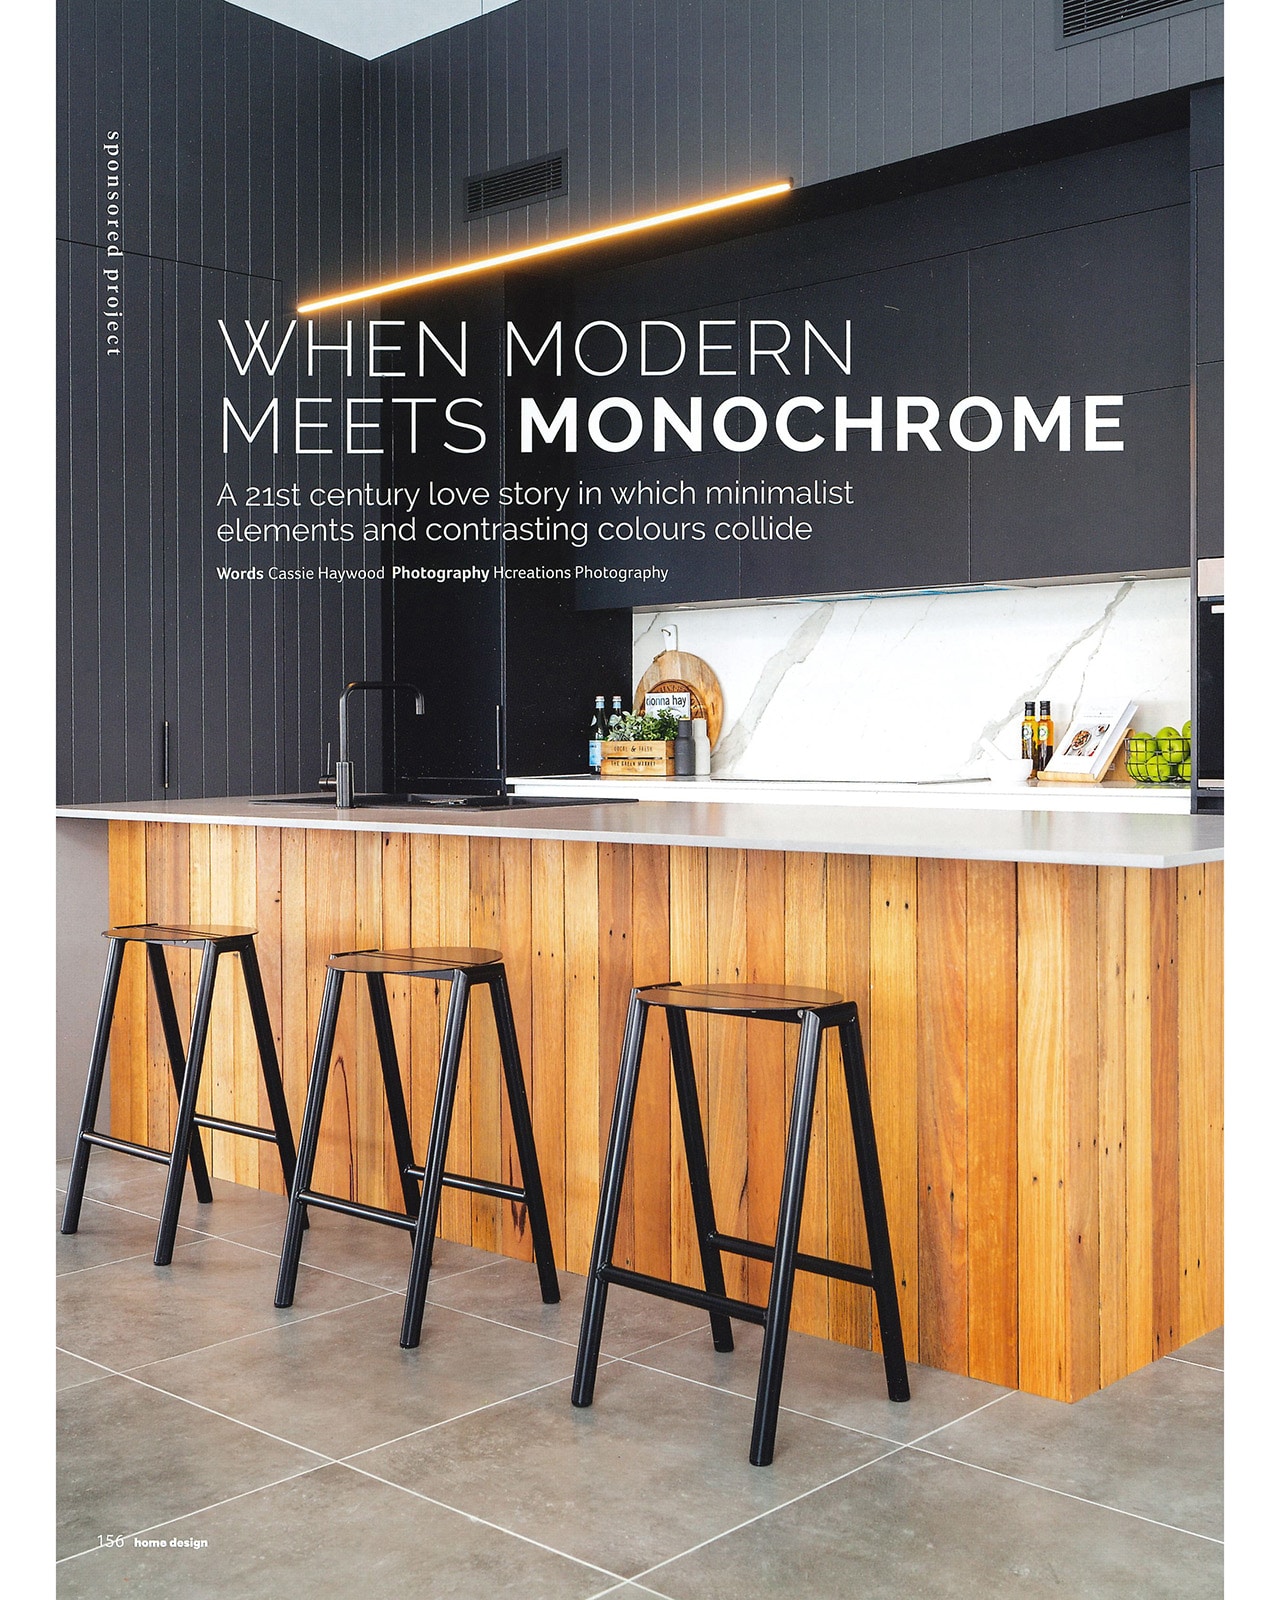 Studio Black Interiors featured in Home Design Magazine.